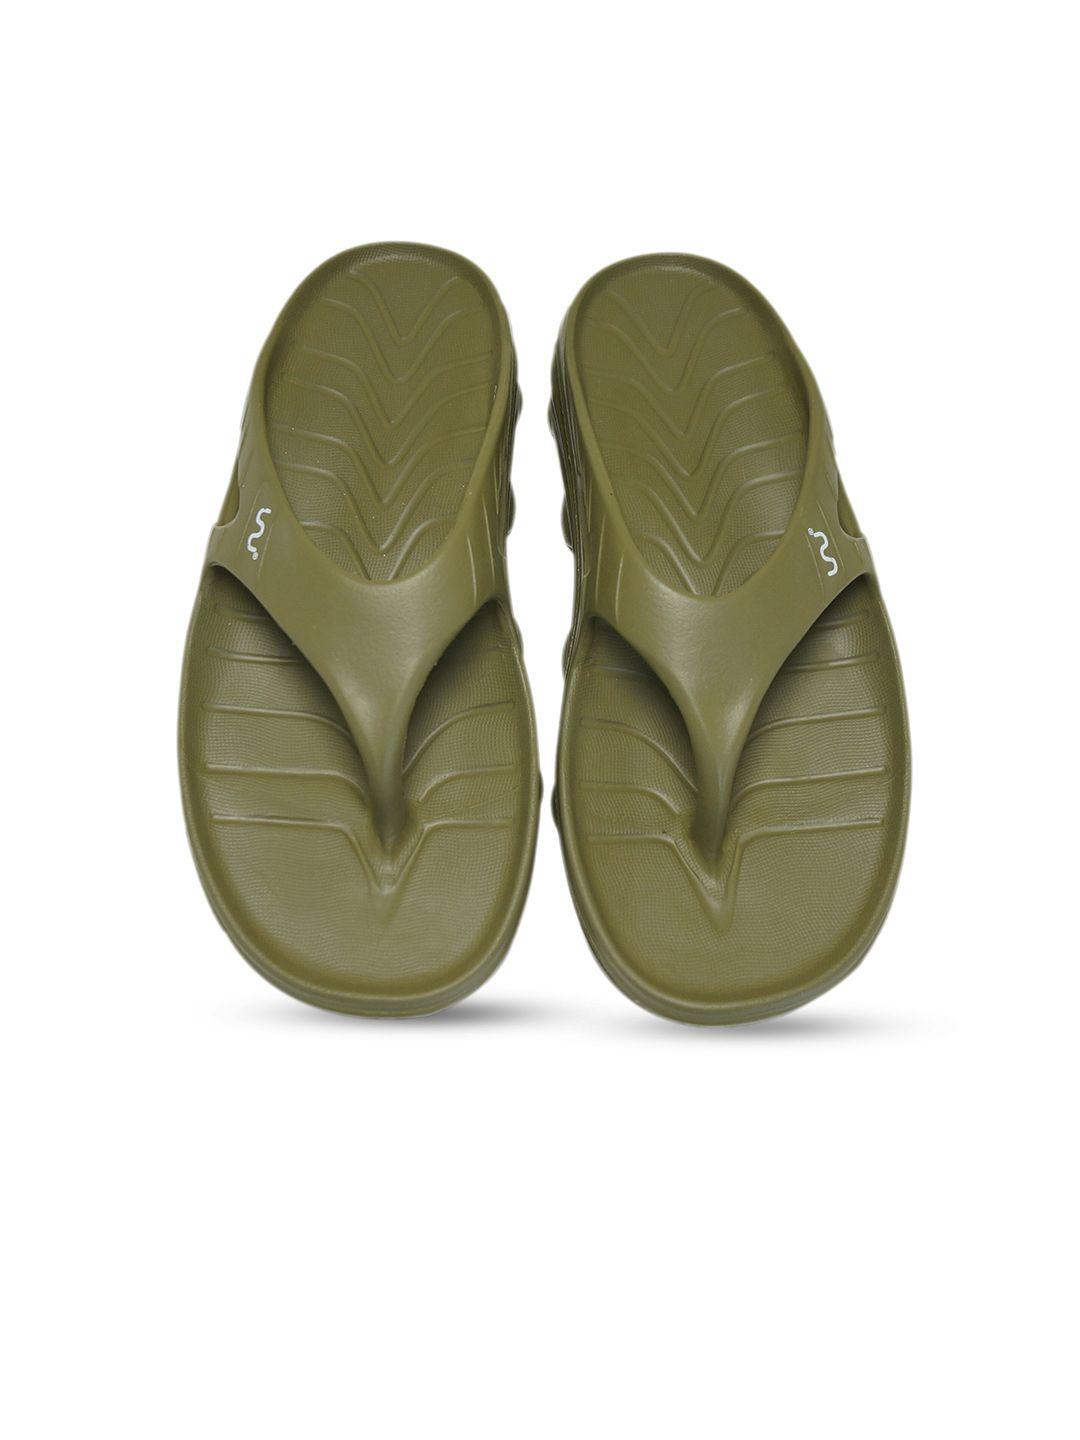 doubleu-men-olive-green-rubber-thong-flip-flops